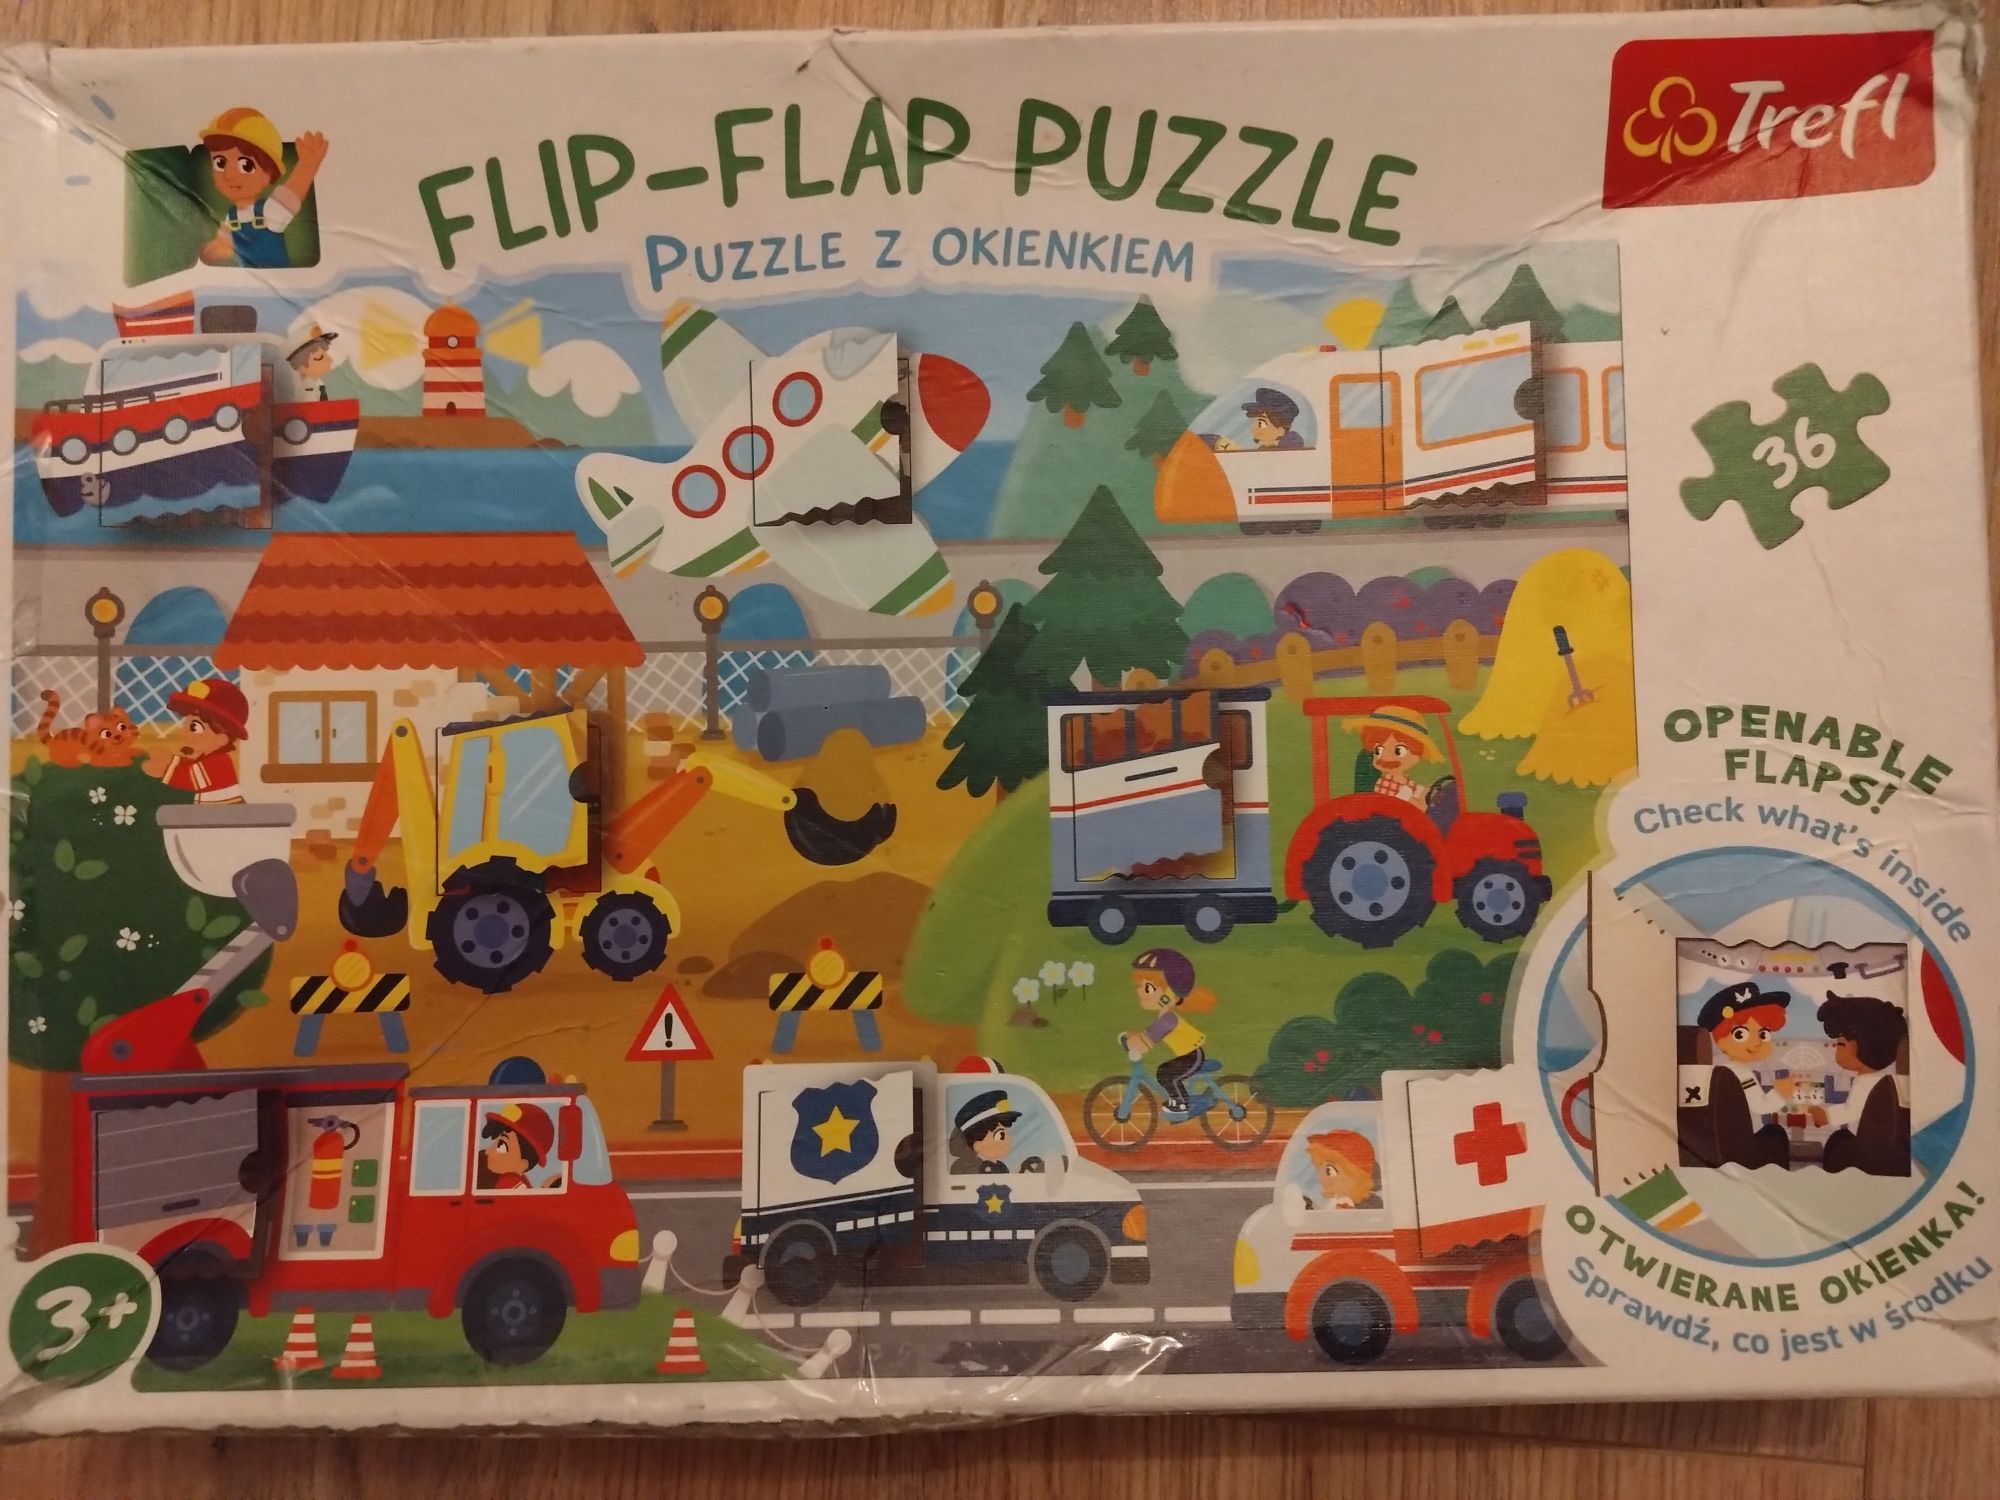 Flip-Flap puzzle z okienkiem Trefl